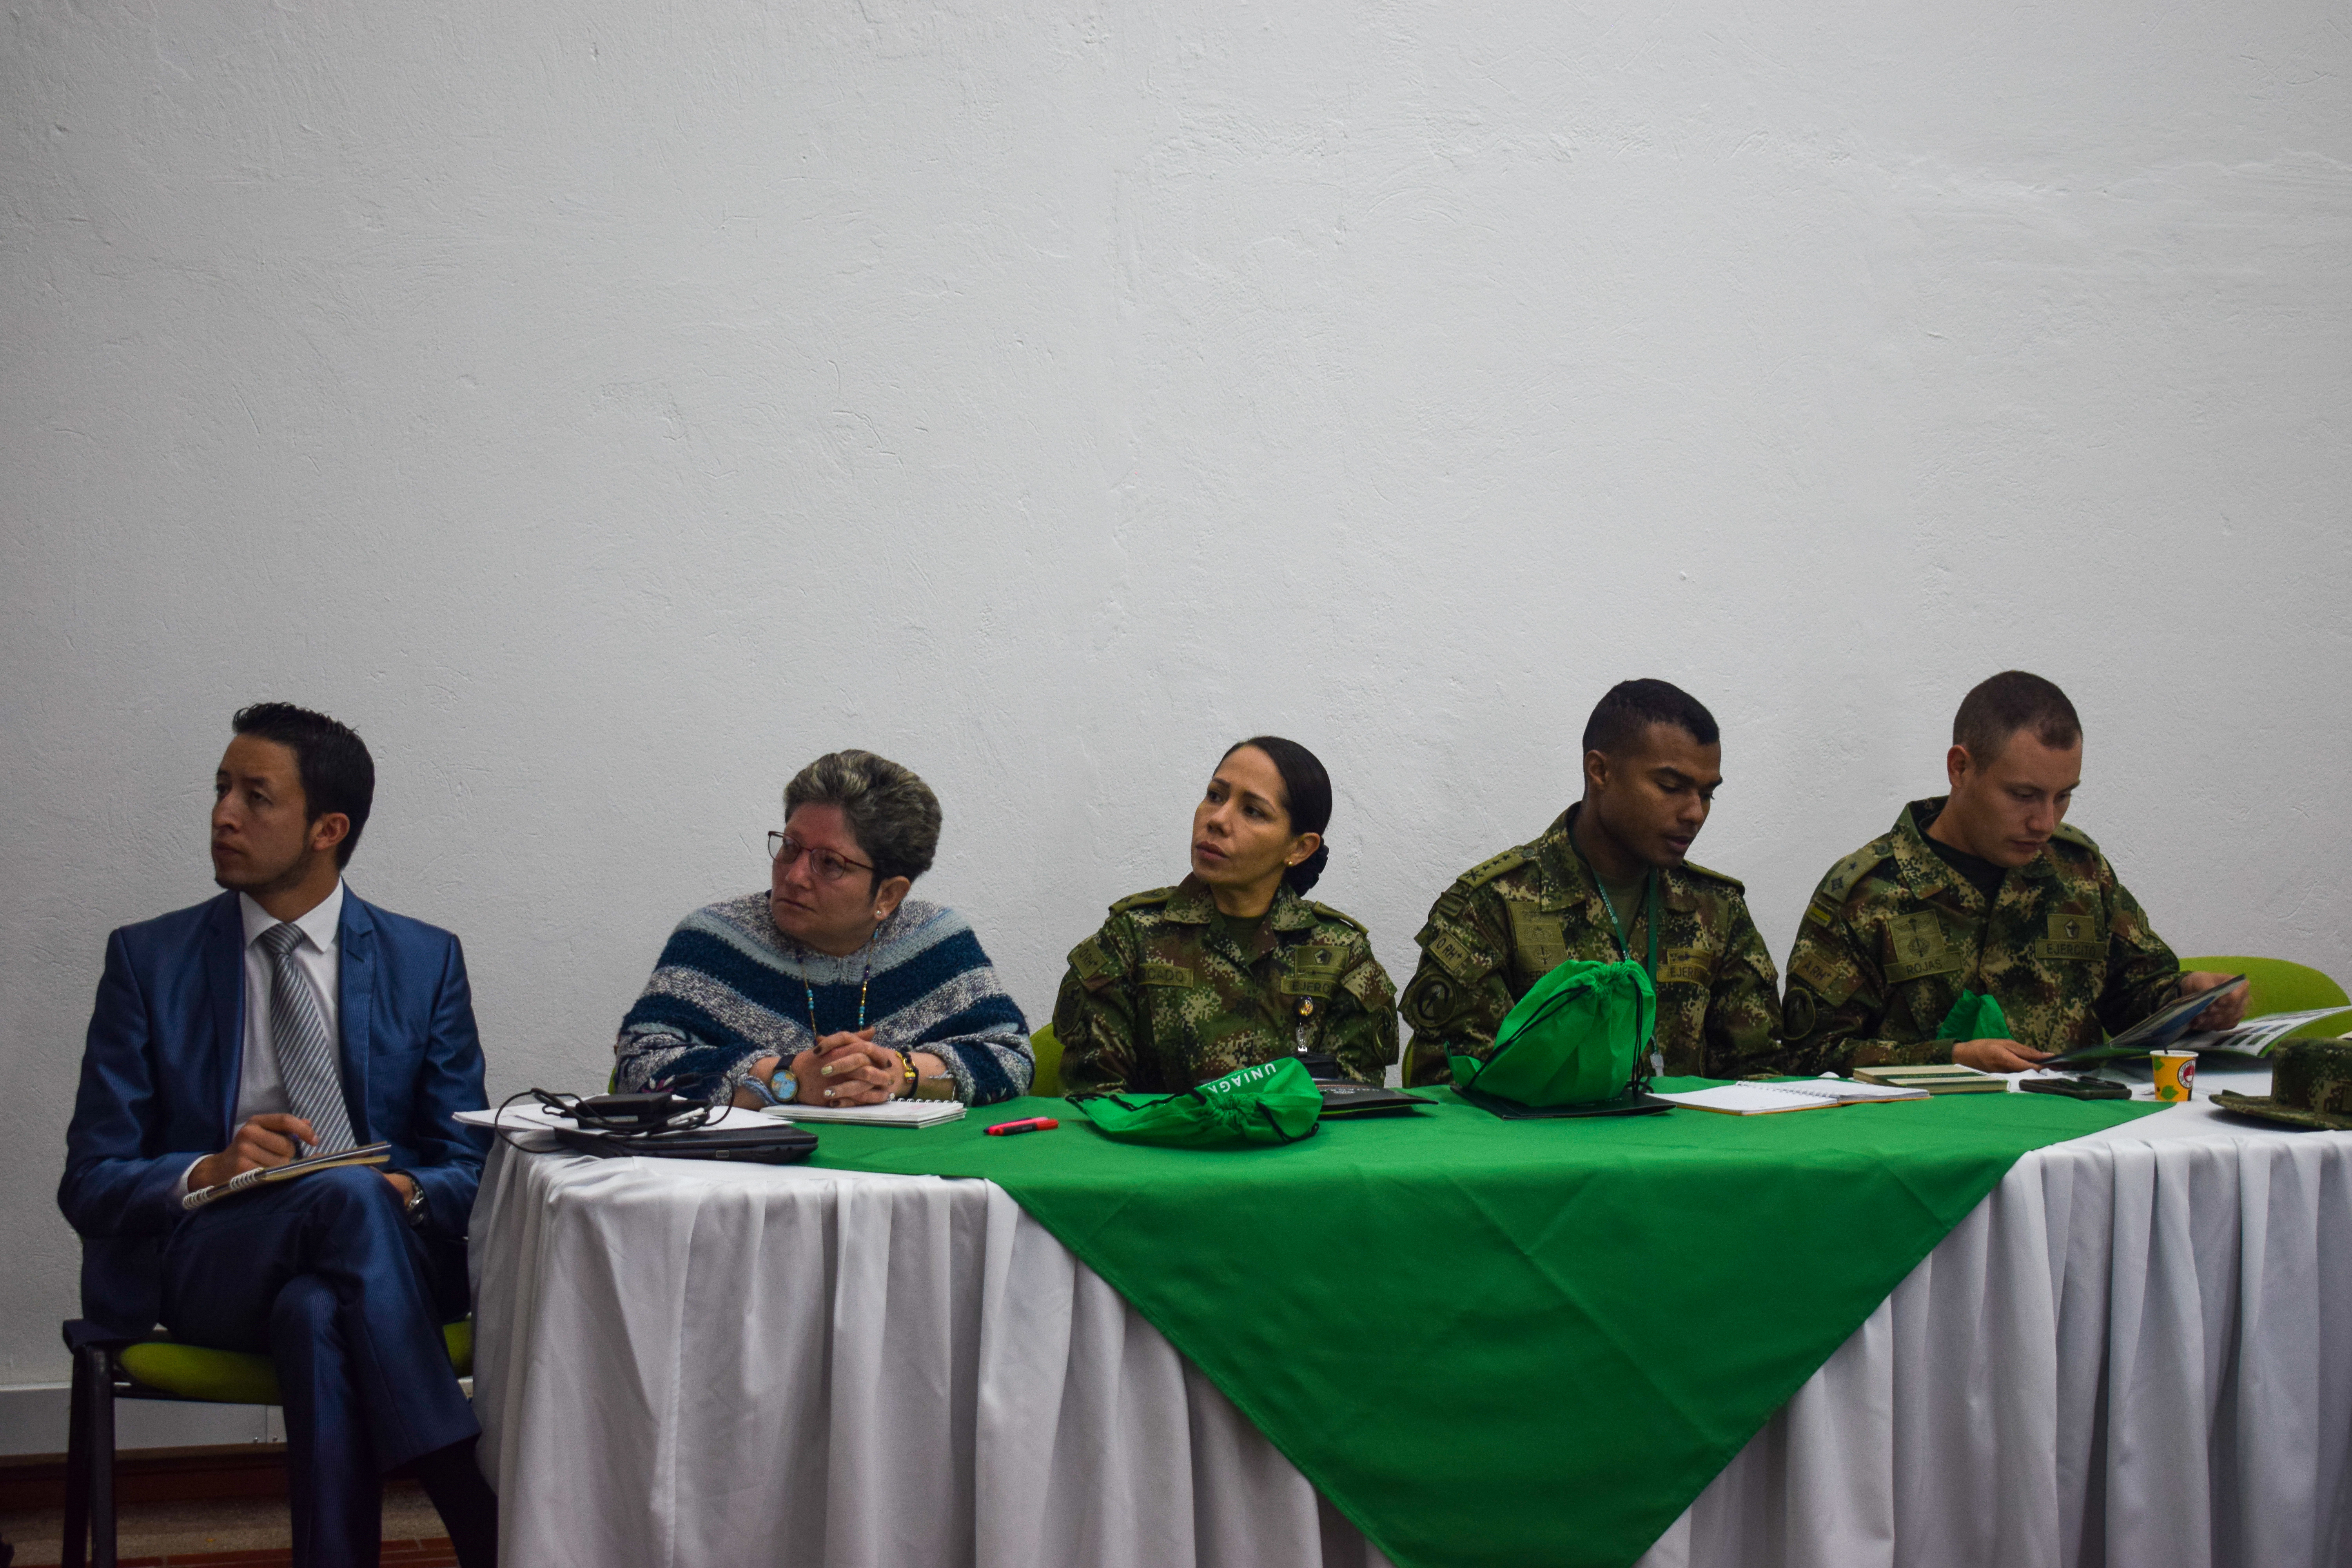 Convenio de cooperación interinstitucional con el Ejército Nacional